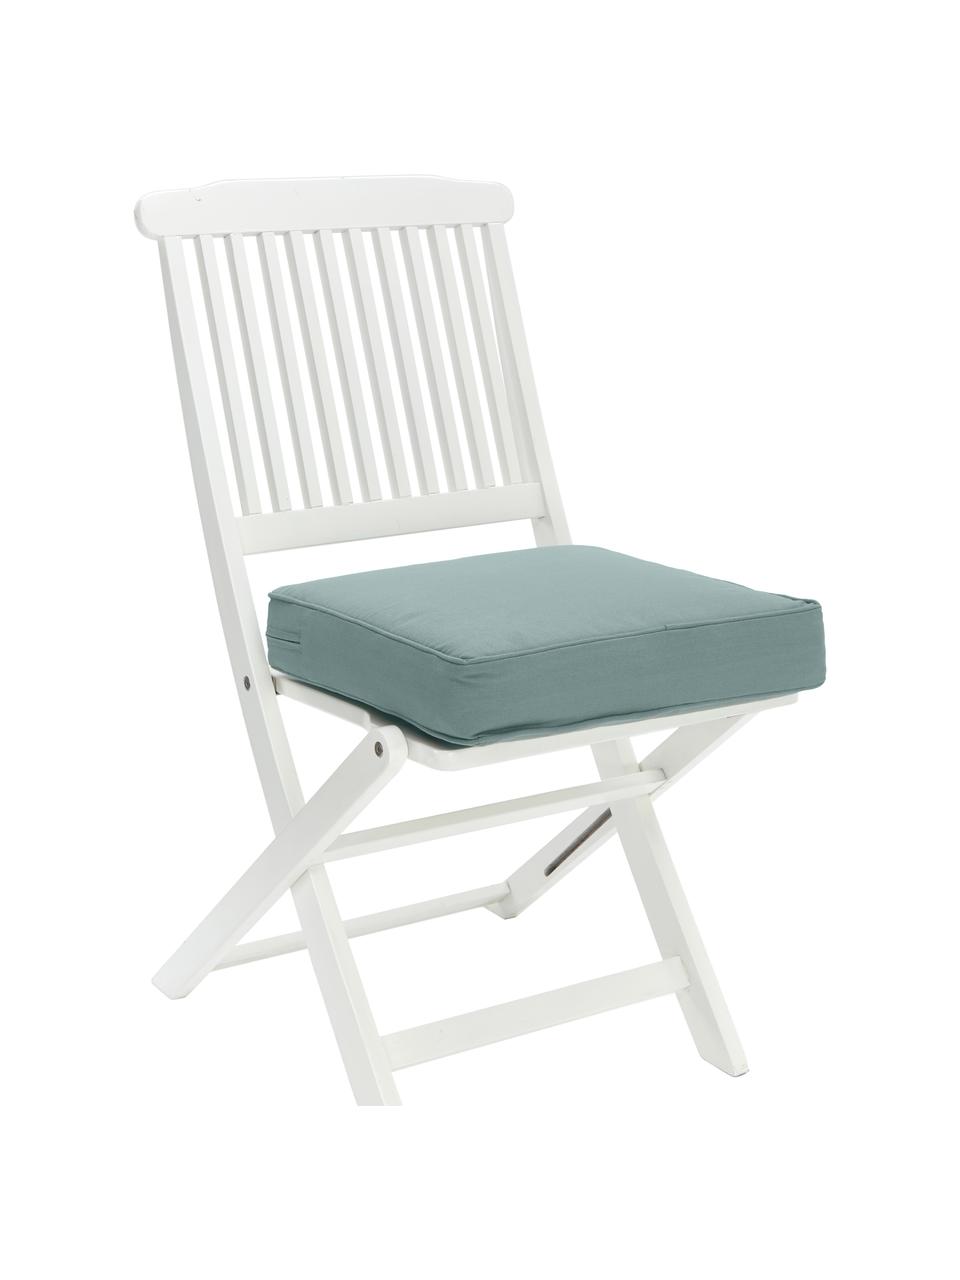 Wysoka poduszka siedzisko na krzesło z bawełny Zoey, Szałwiowy zielony, S 40 x D 40 cm